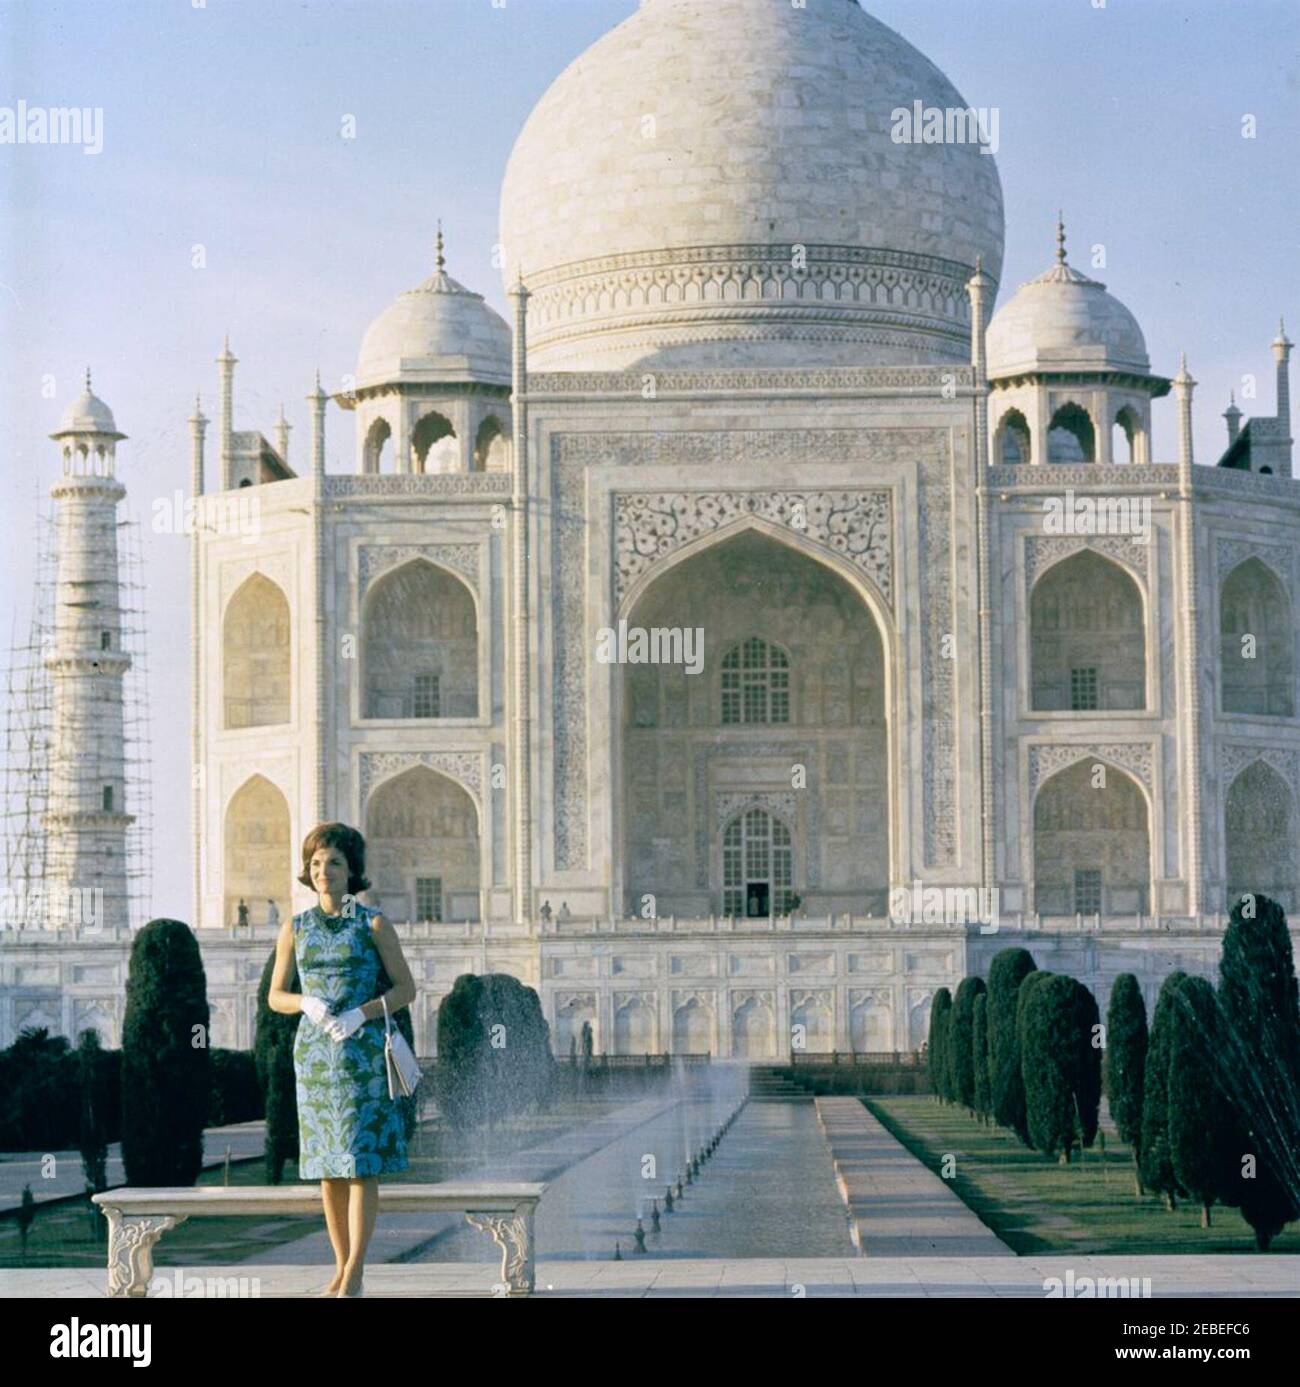 Primera Dama Jacqueline Kennedyu2019s viaje a la India y Pakistán: Agra, Uttar Pradesh, India, visita al Taj Mahal. La primera Dama Jacqueline Kennedy visita el Taj Mahal en Agra, Uttar Pradesh, India. Foto de stock